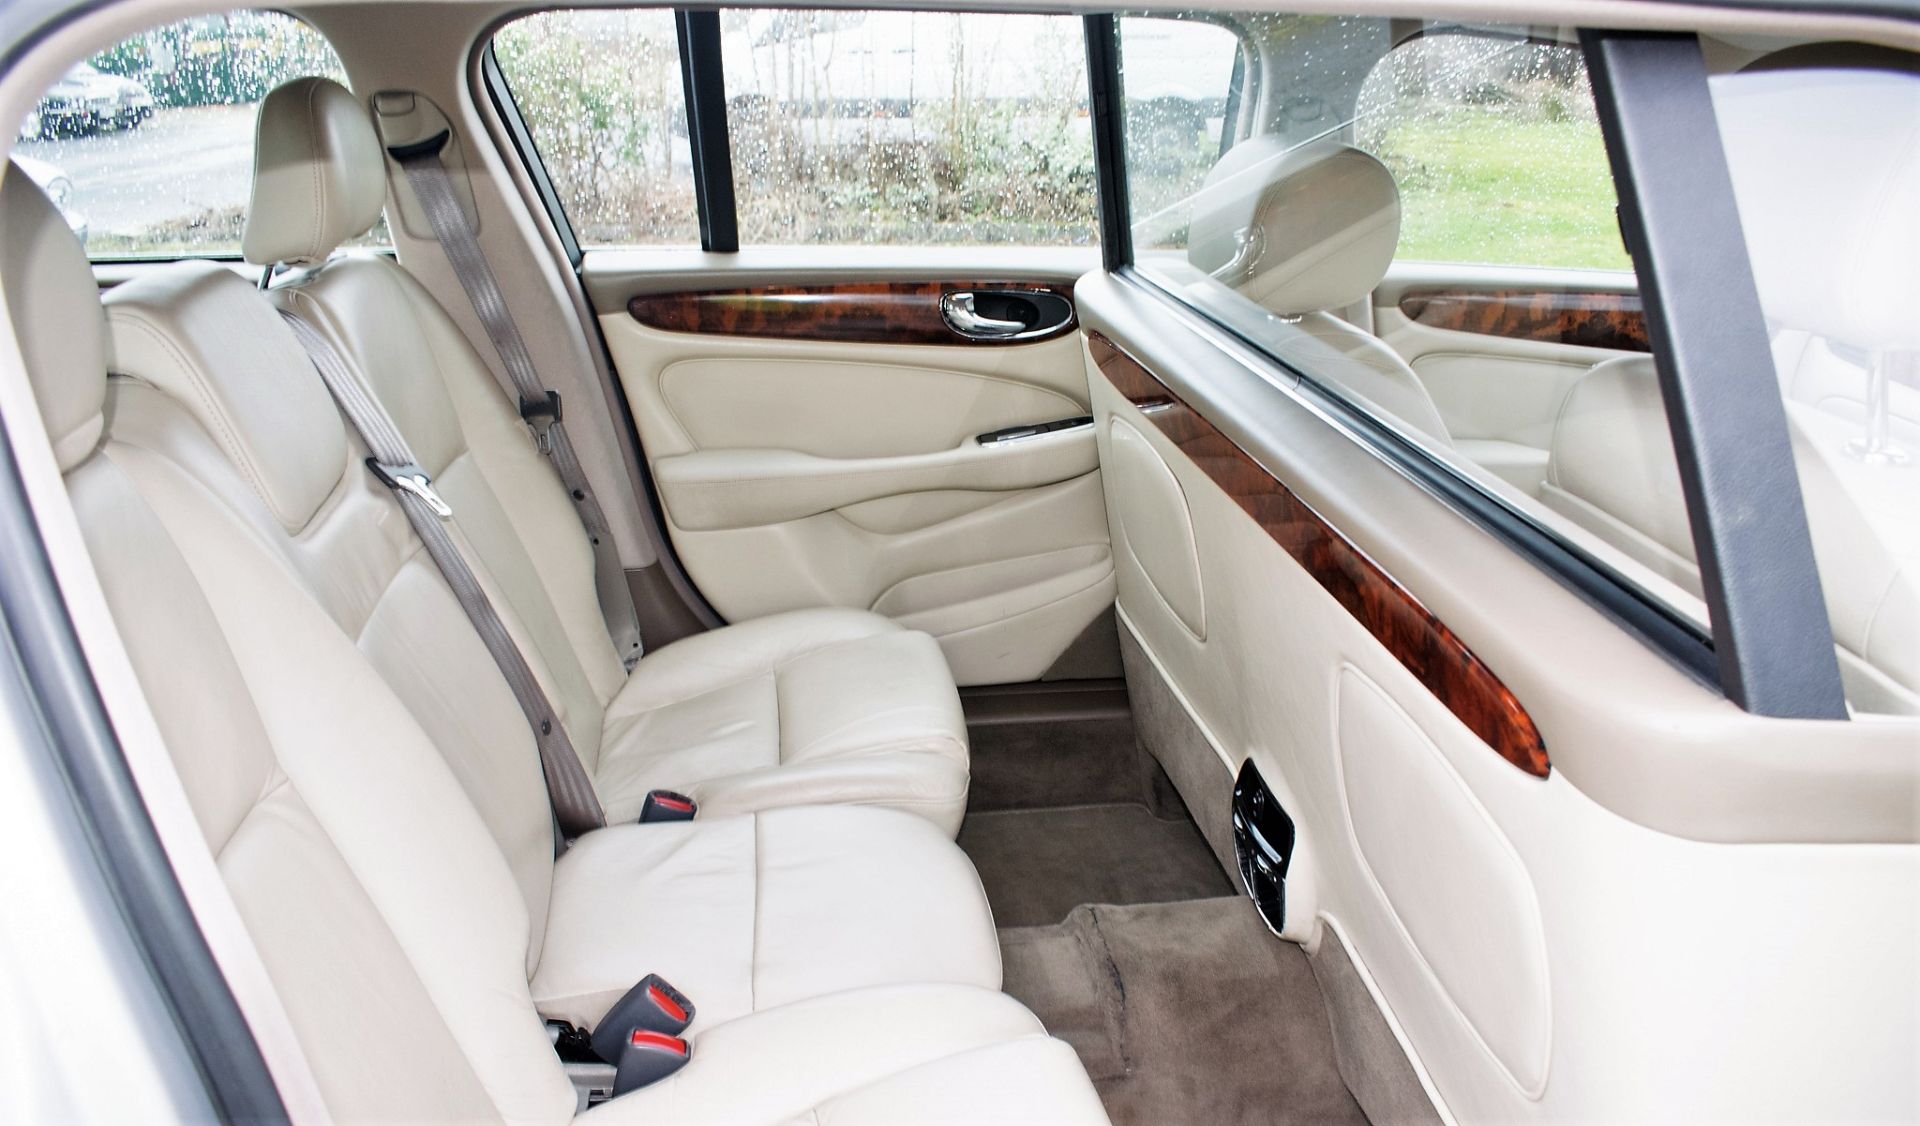 Jaguar XJ6 V6 automatic stretch Limousine Registration Number: BW54 YNM (Registration Number - Image 10 of 20